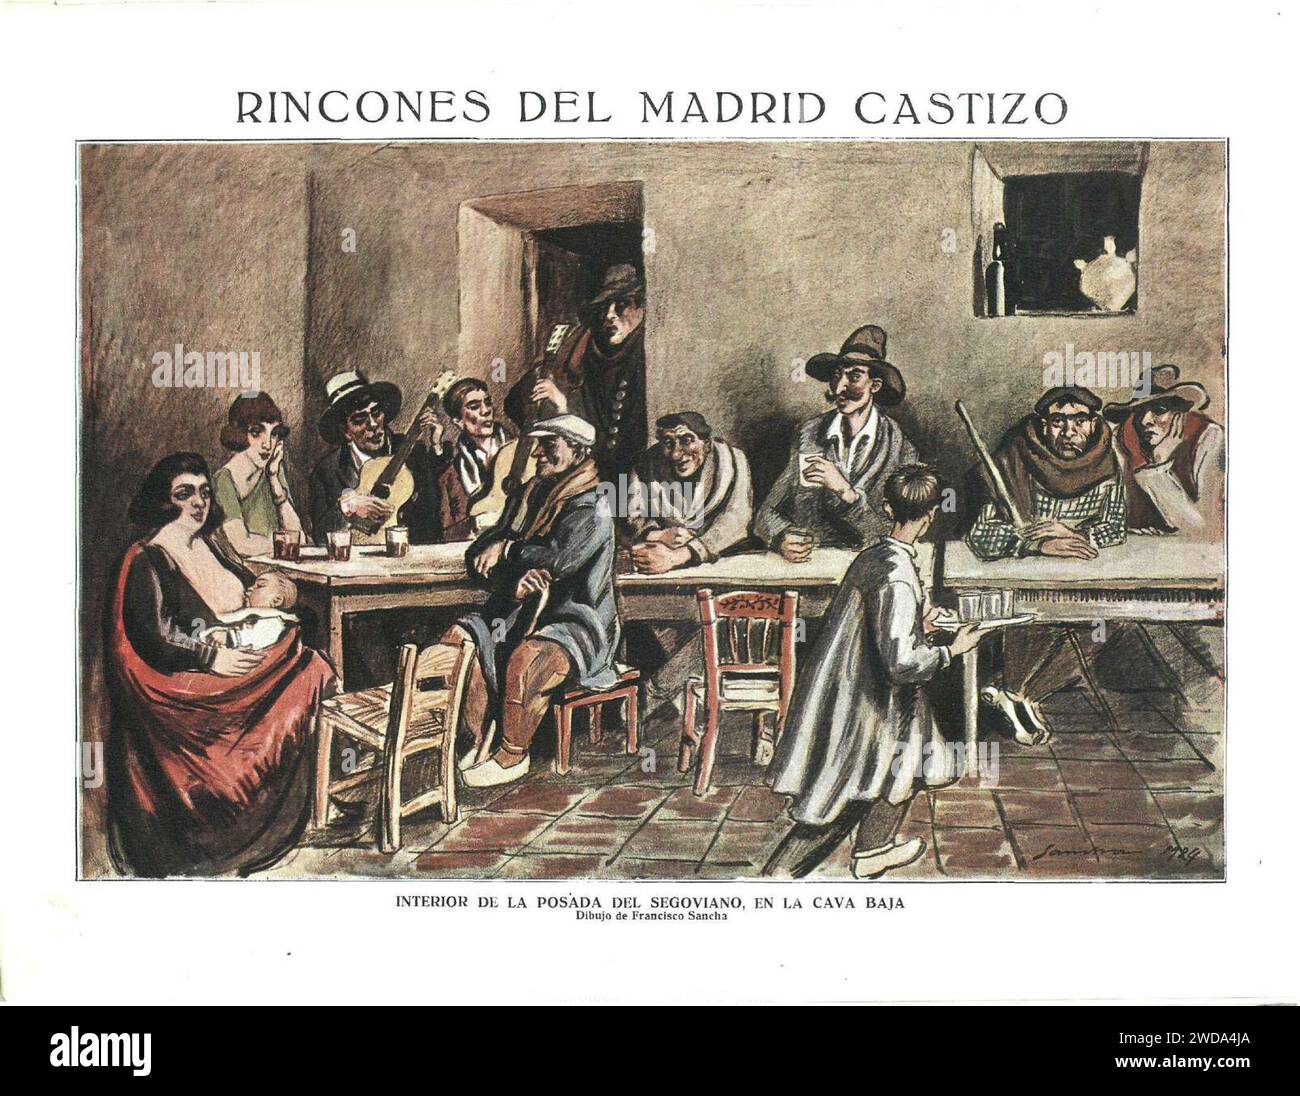 1924-03-29, La Esfera, Rincones del Madrid castizo, Interior de la posada del Segoviano, en la Cava Baja, Sancha (color). Stock Photo